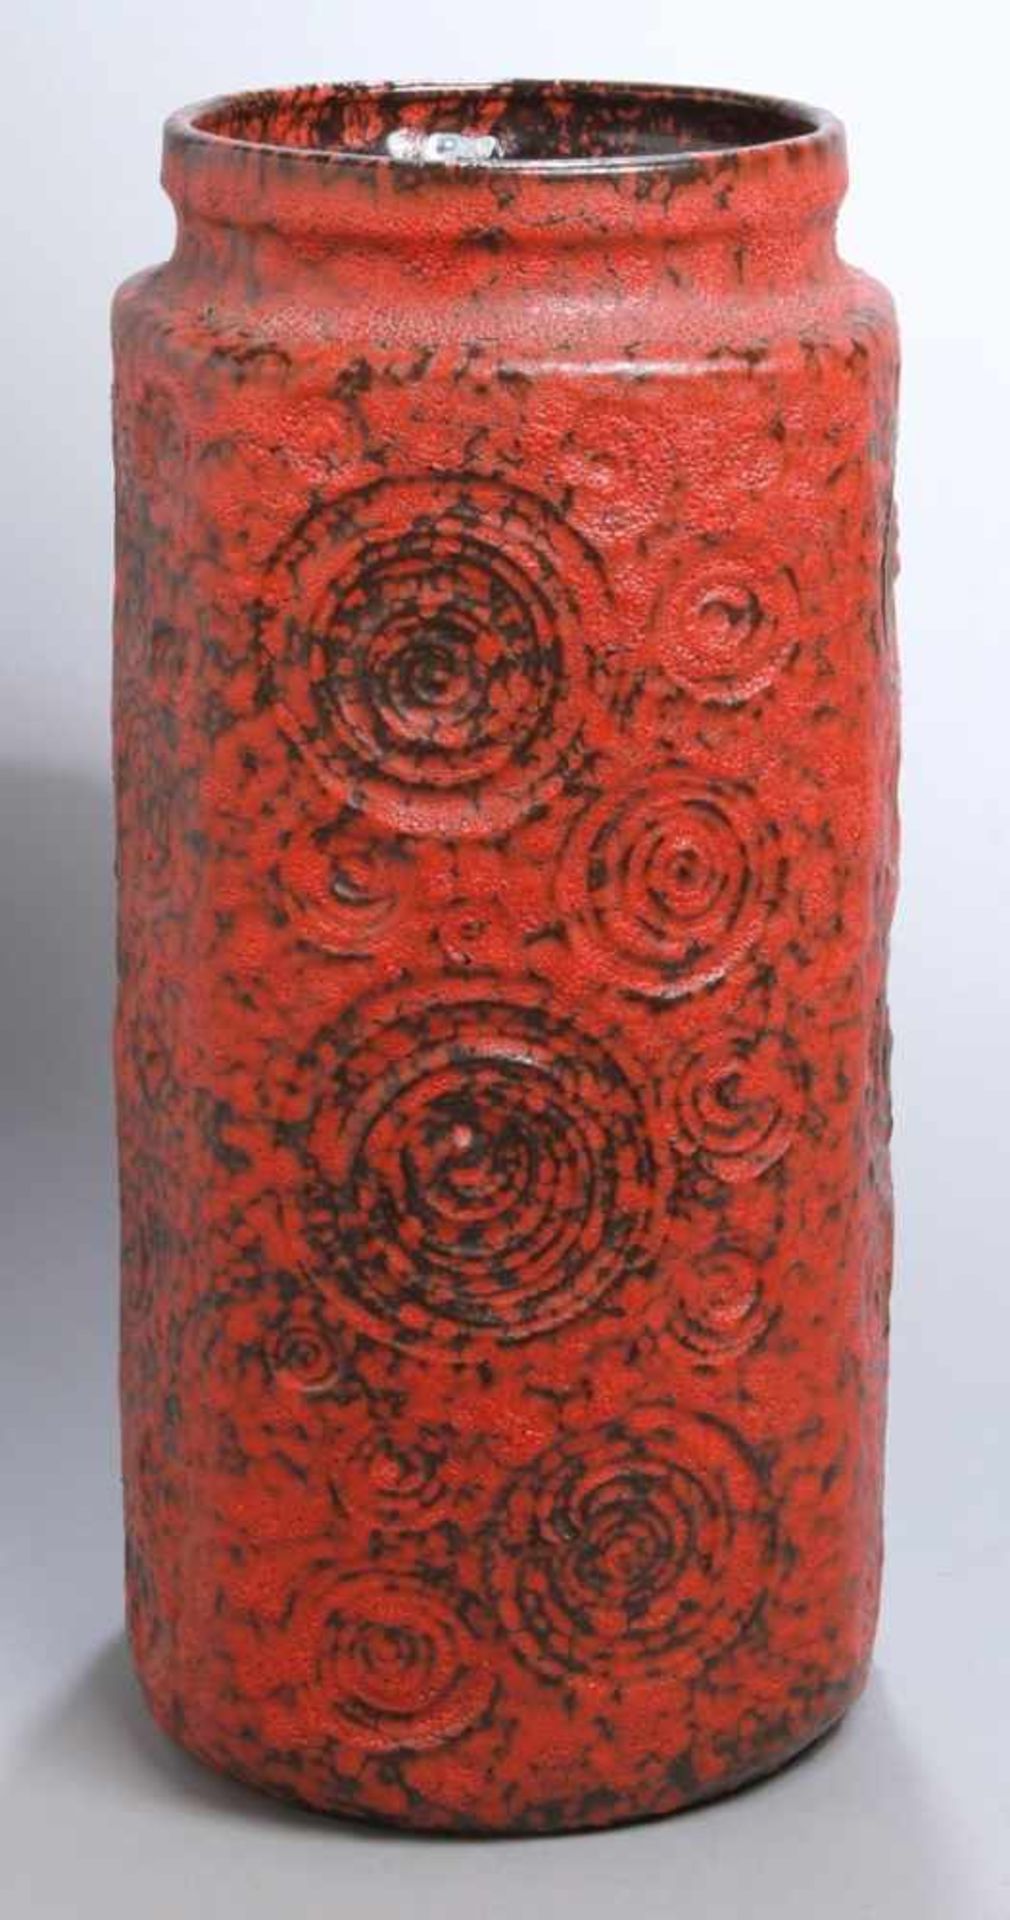 Keramik-Bodenvase, Scheurich KG, Kleinheubach, 70er Jahre, Mod.nr.: 282-48, runder Stand,hoher,